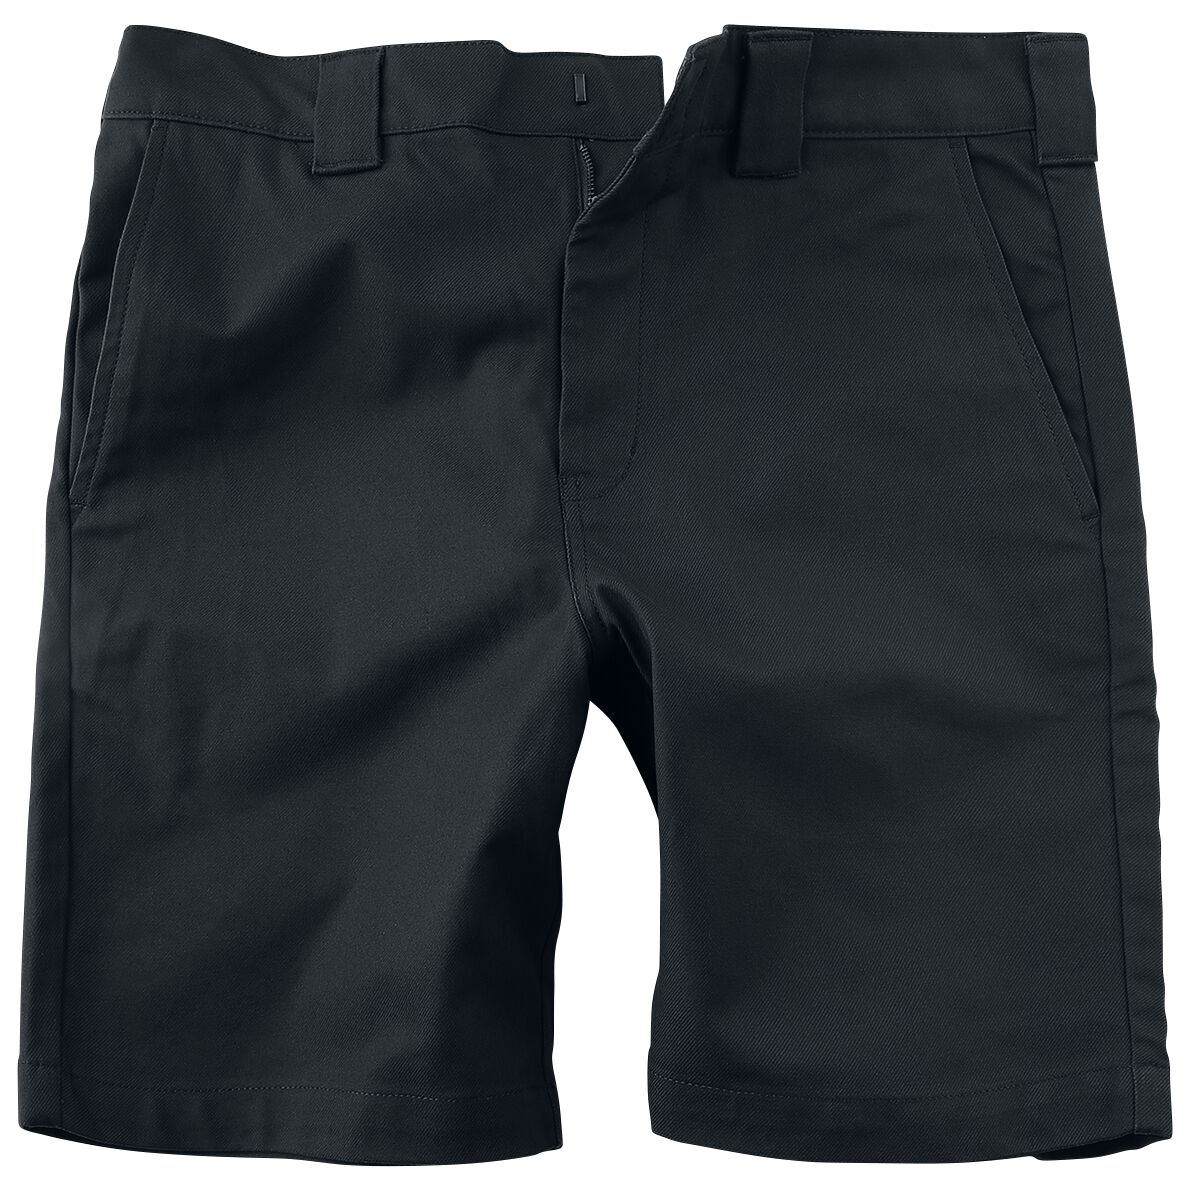 Dickies Short - Cobden Short - 30 bis 40 - für Männer - Größe 31 - schwarz